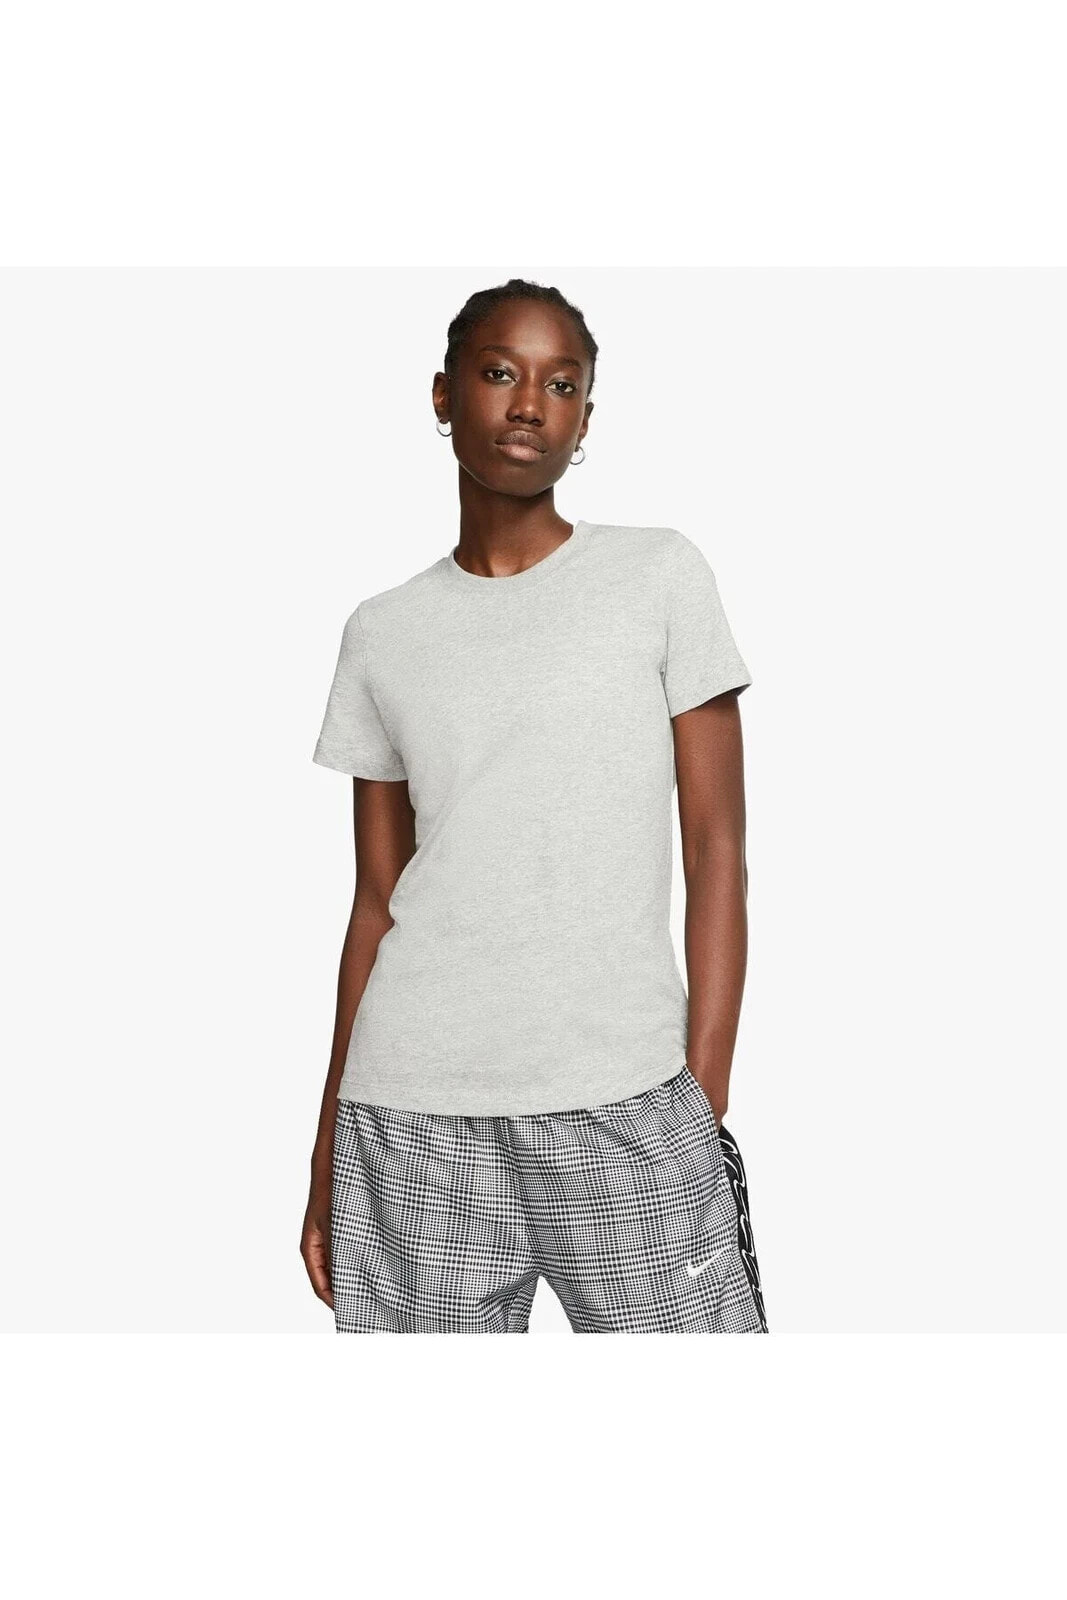 Kadın Gri Spor Giyim Kadın Urban Kısa Kollu T-shirt